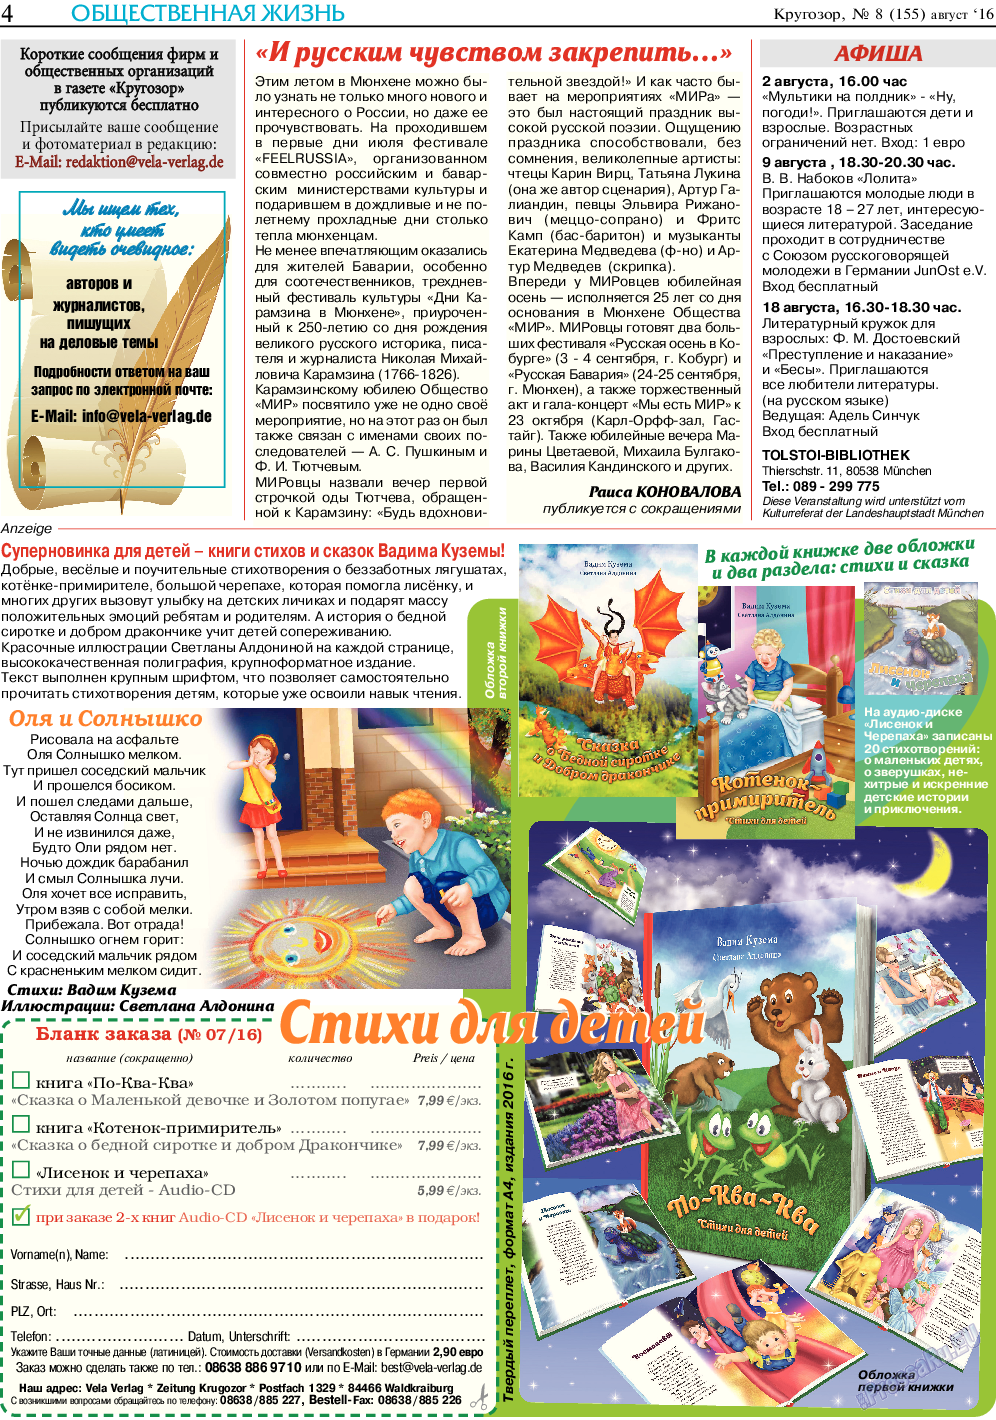 Кругозор, газета. 2016 №8 стр.4